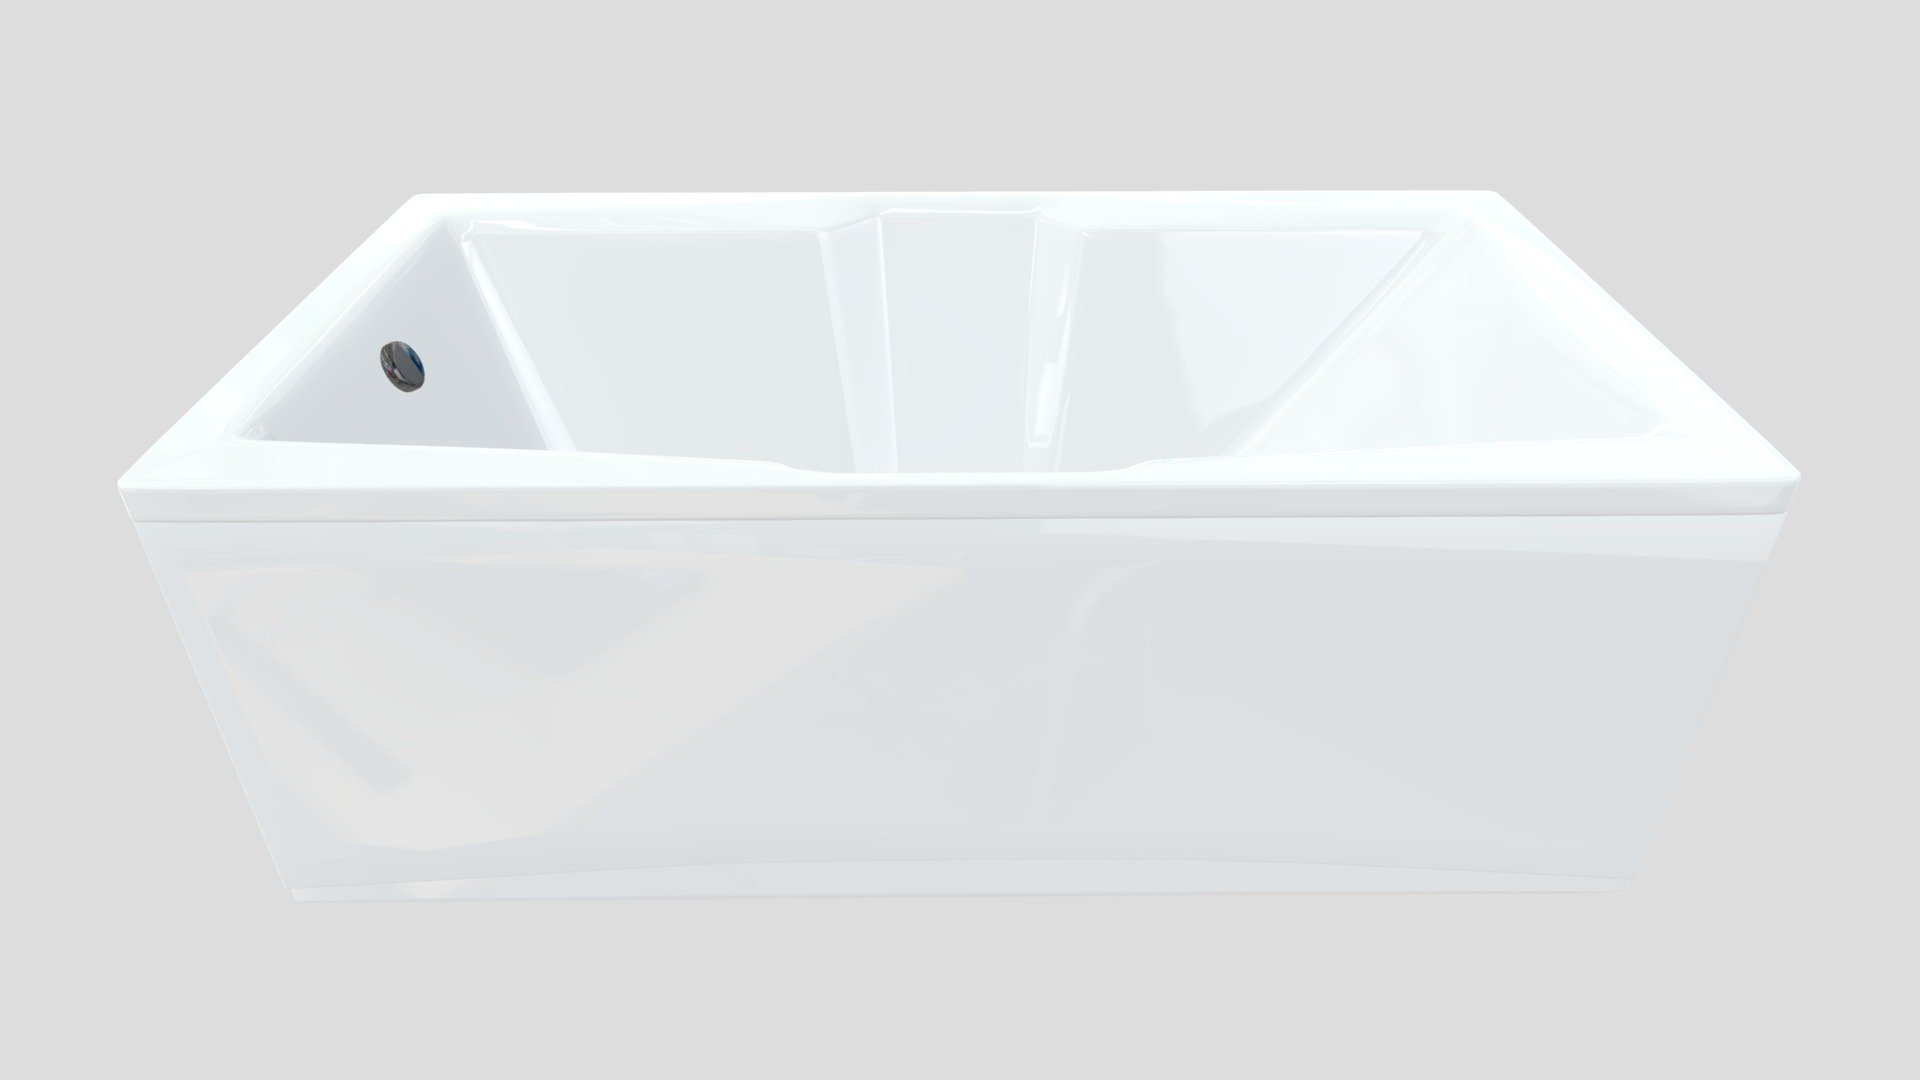 Павия - акриловая ванна - 3D model by 7-luxe [4038166] - Sketchfab